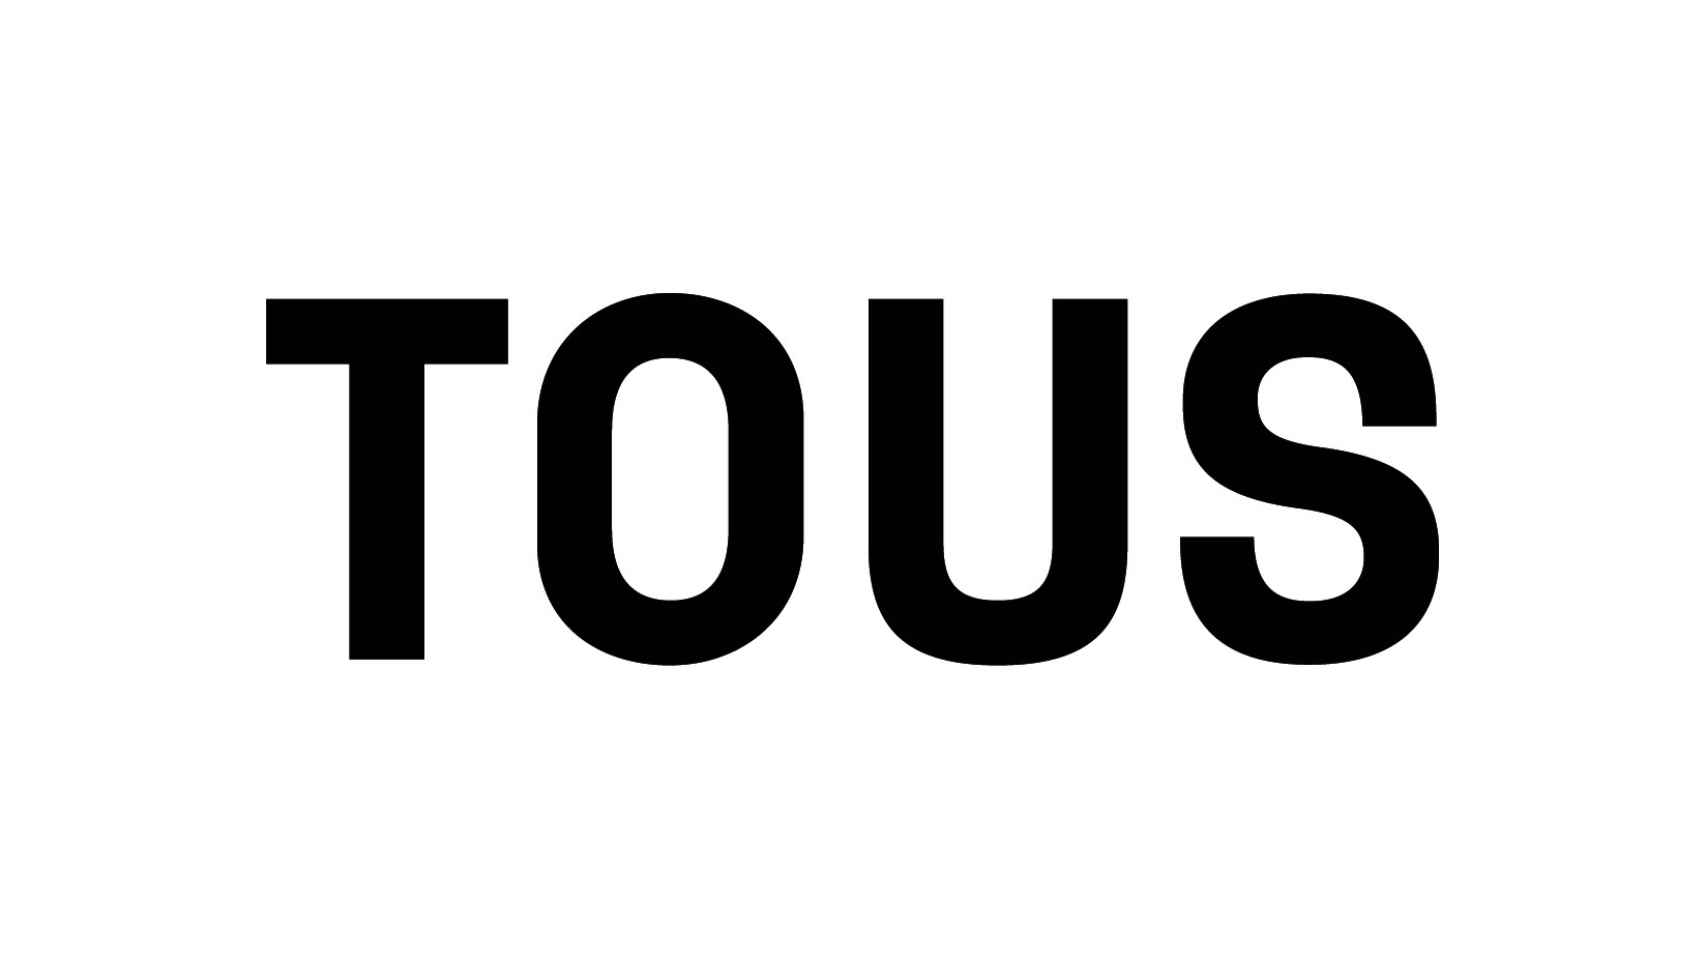 Nueva tipografía del logo de Tous.